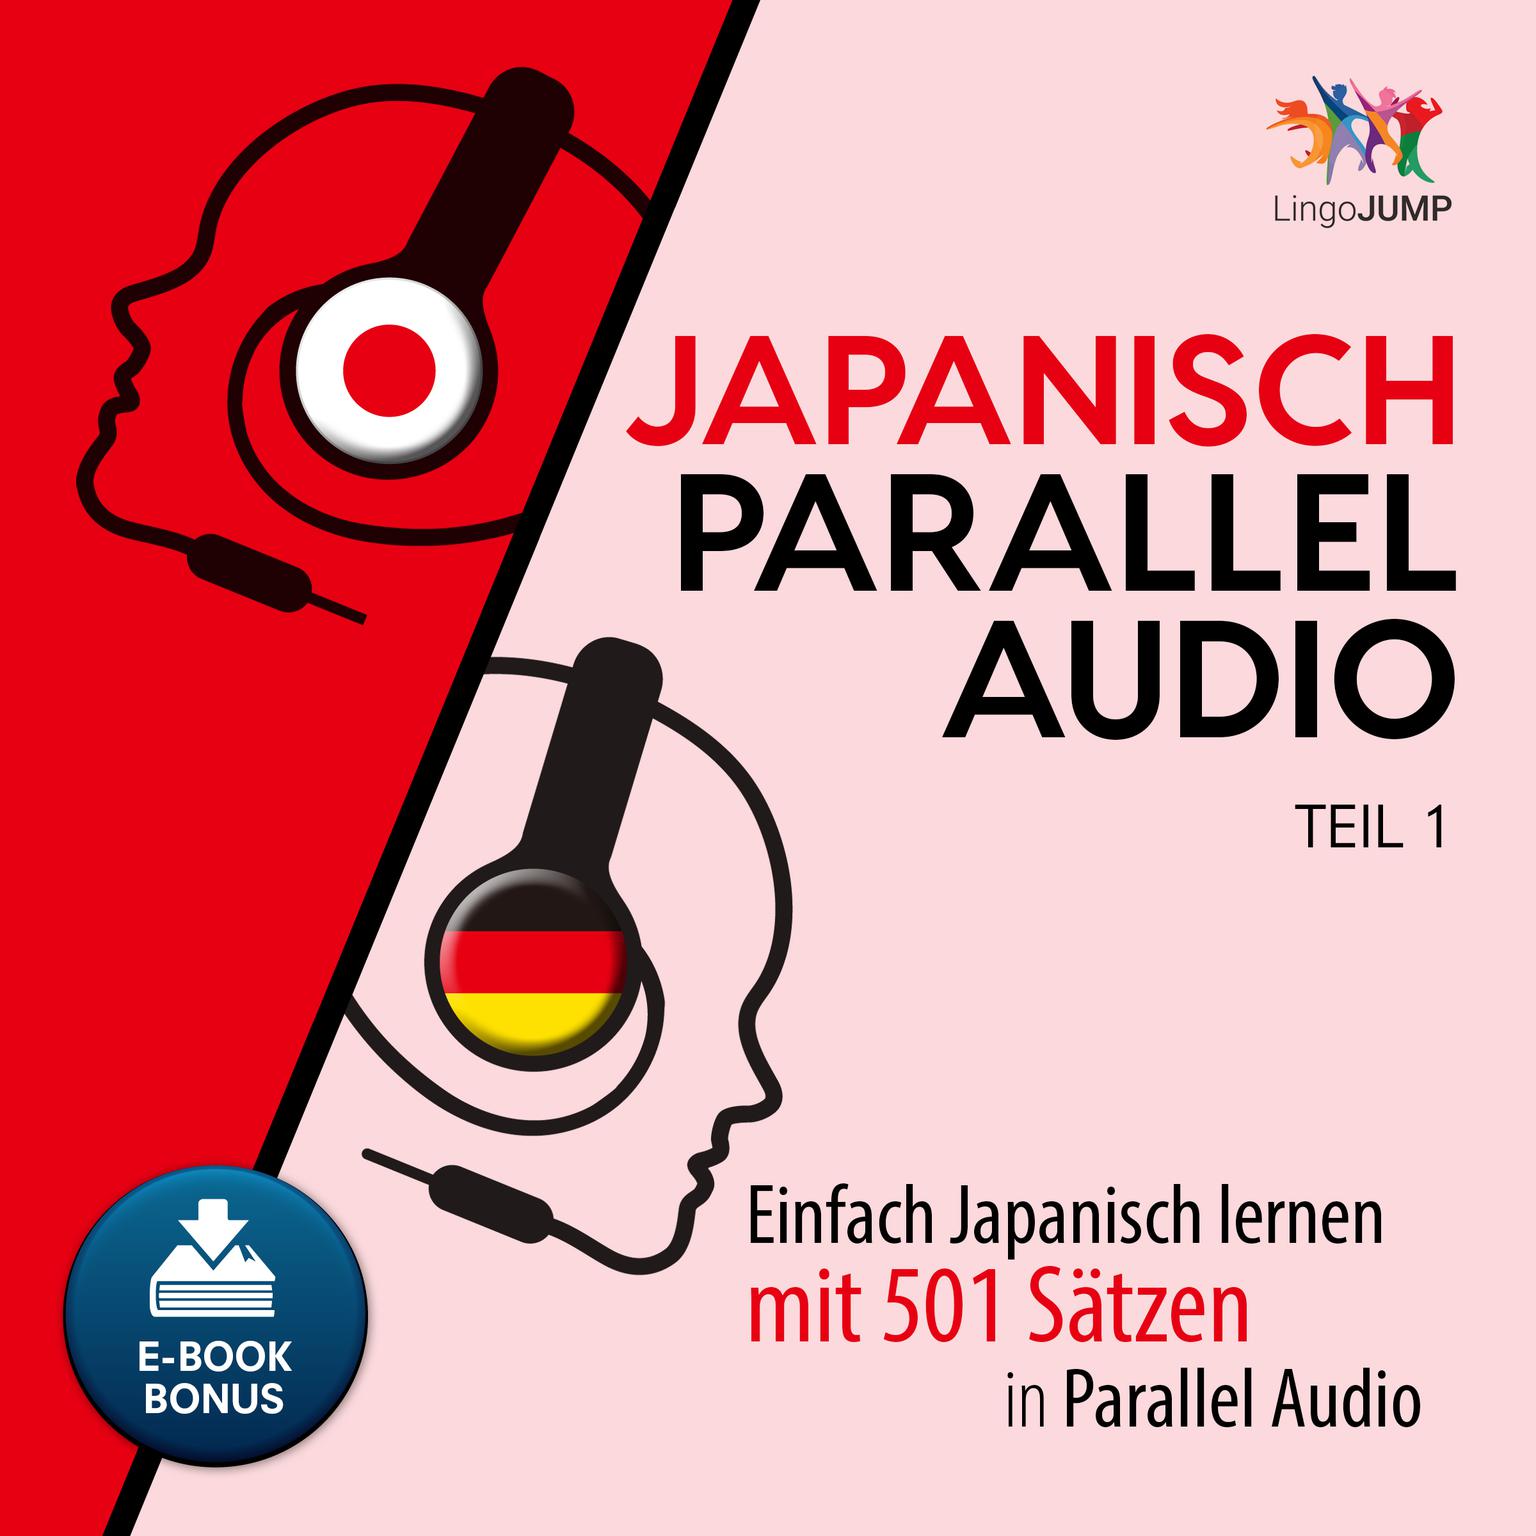 Japanisch Parallel Audio - Einfach Japanisch lernen mit 501 Sätzen in Parallel Audio - Teil 1 Audiobook, by Lingo Jump